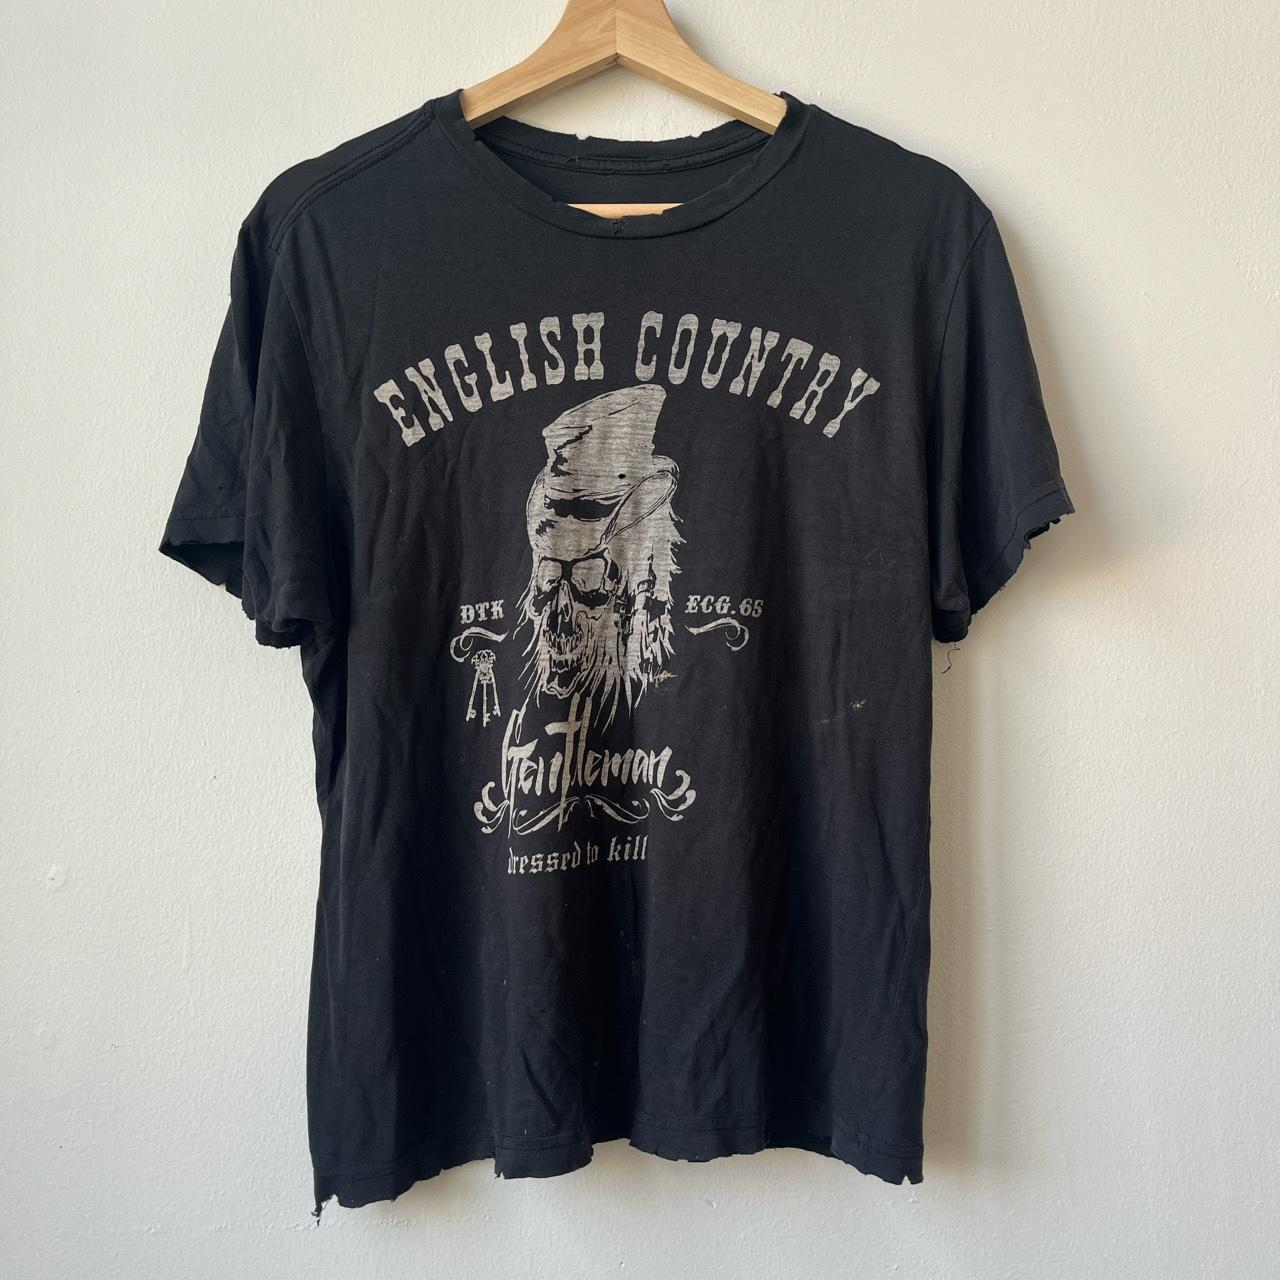 Country Gentleman Men's Black T-shirt (6)